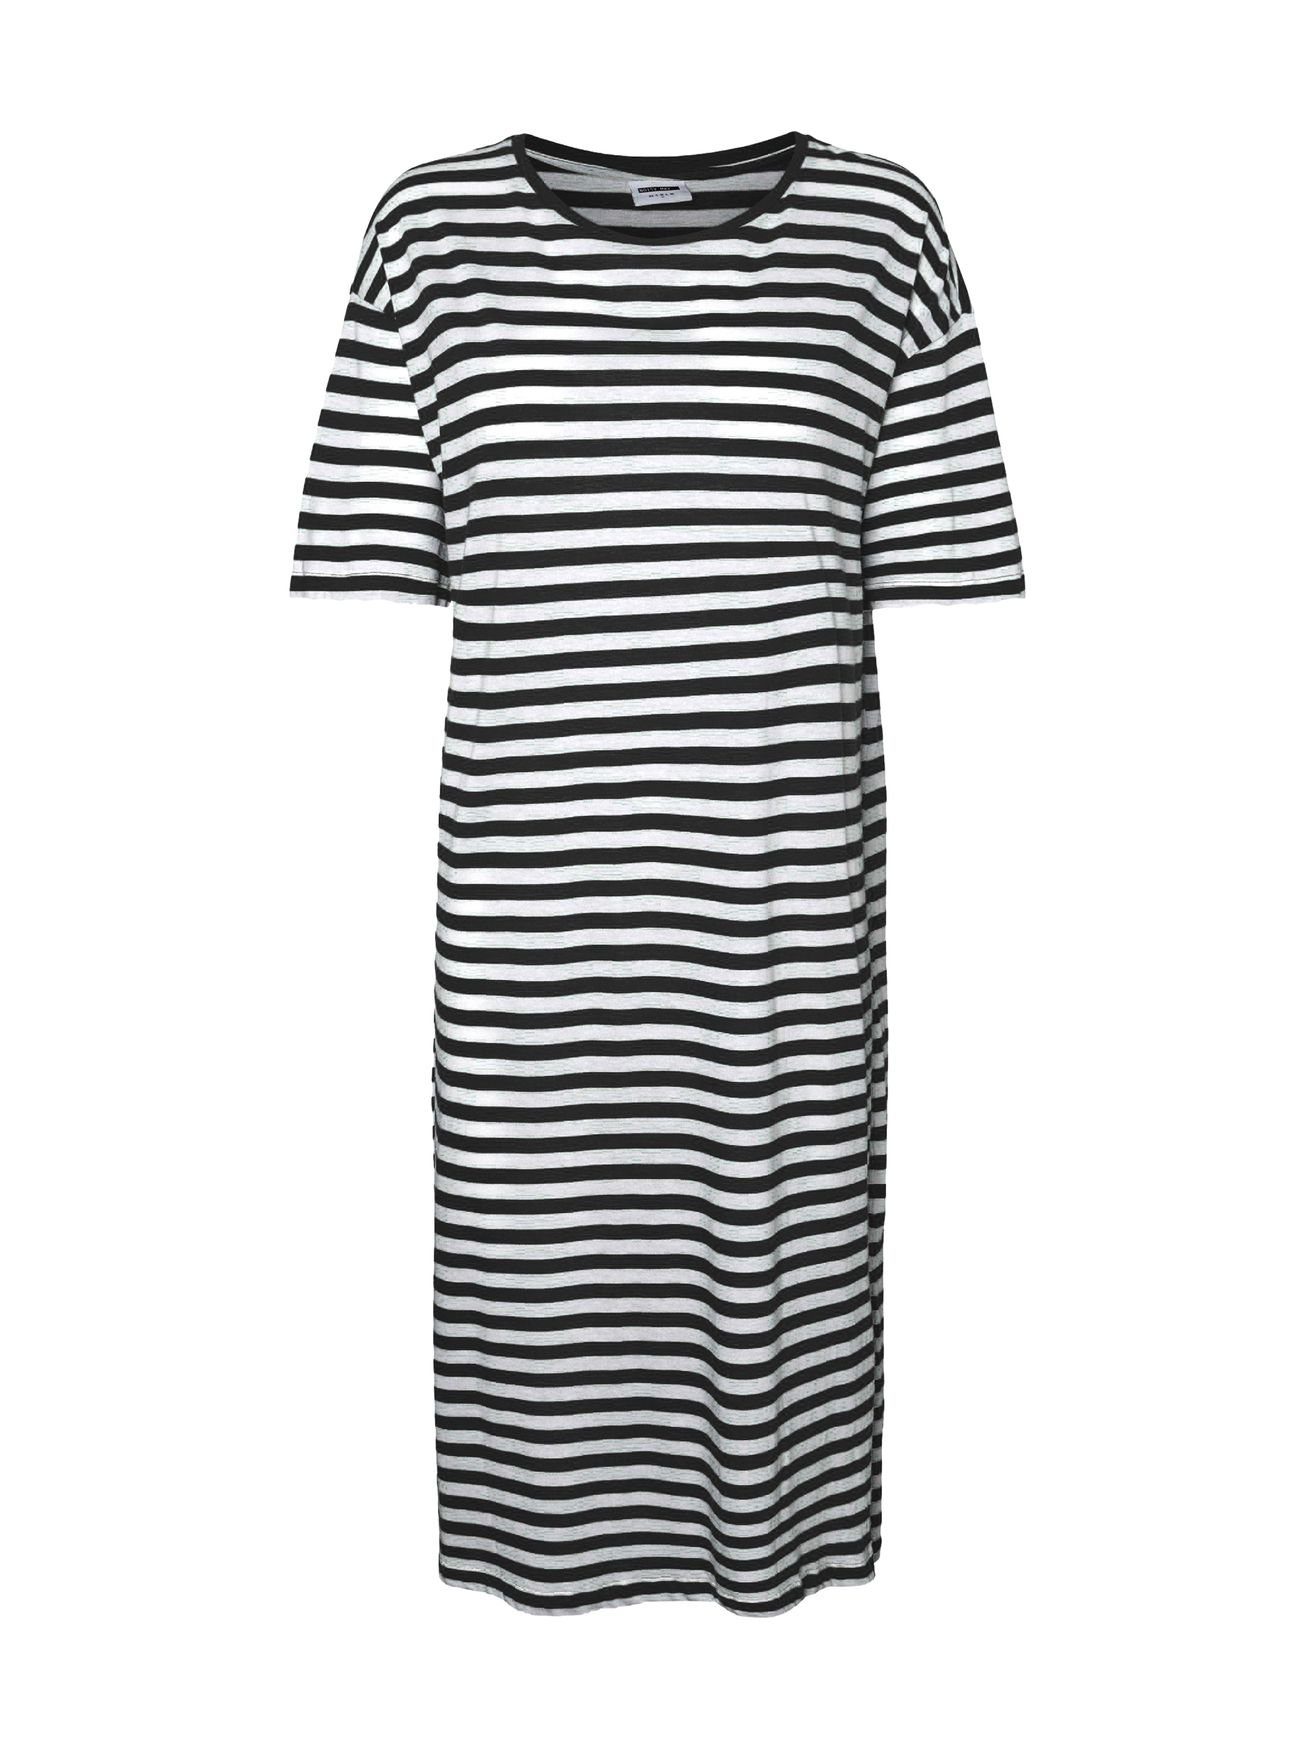 Sommer Shirtkleid Fit Dress (lang) 5391 Regular Noisy Kurzarm may Rundhals in weiß/schwarz Kleid